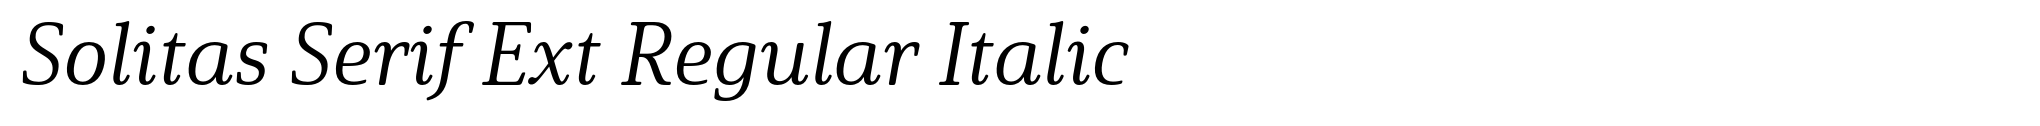 Solitas Serif Ext Regular Italic image